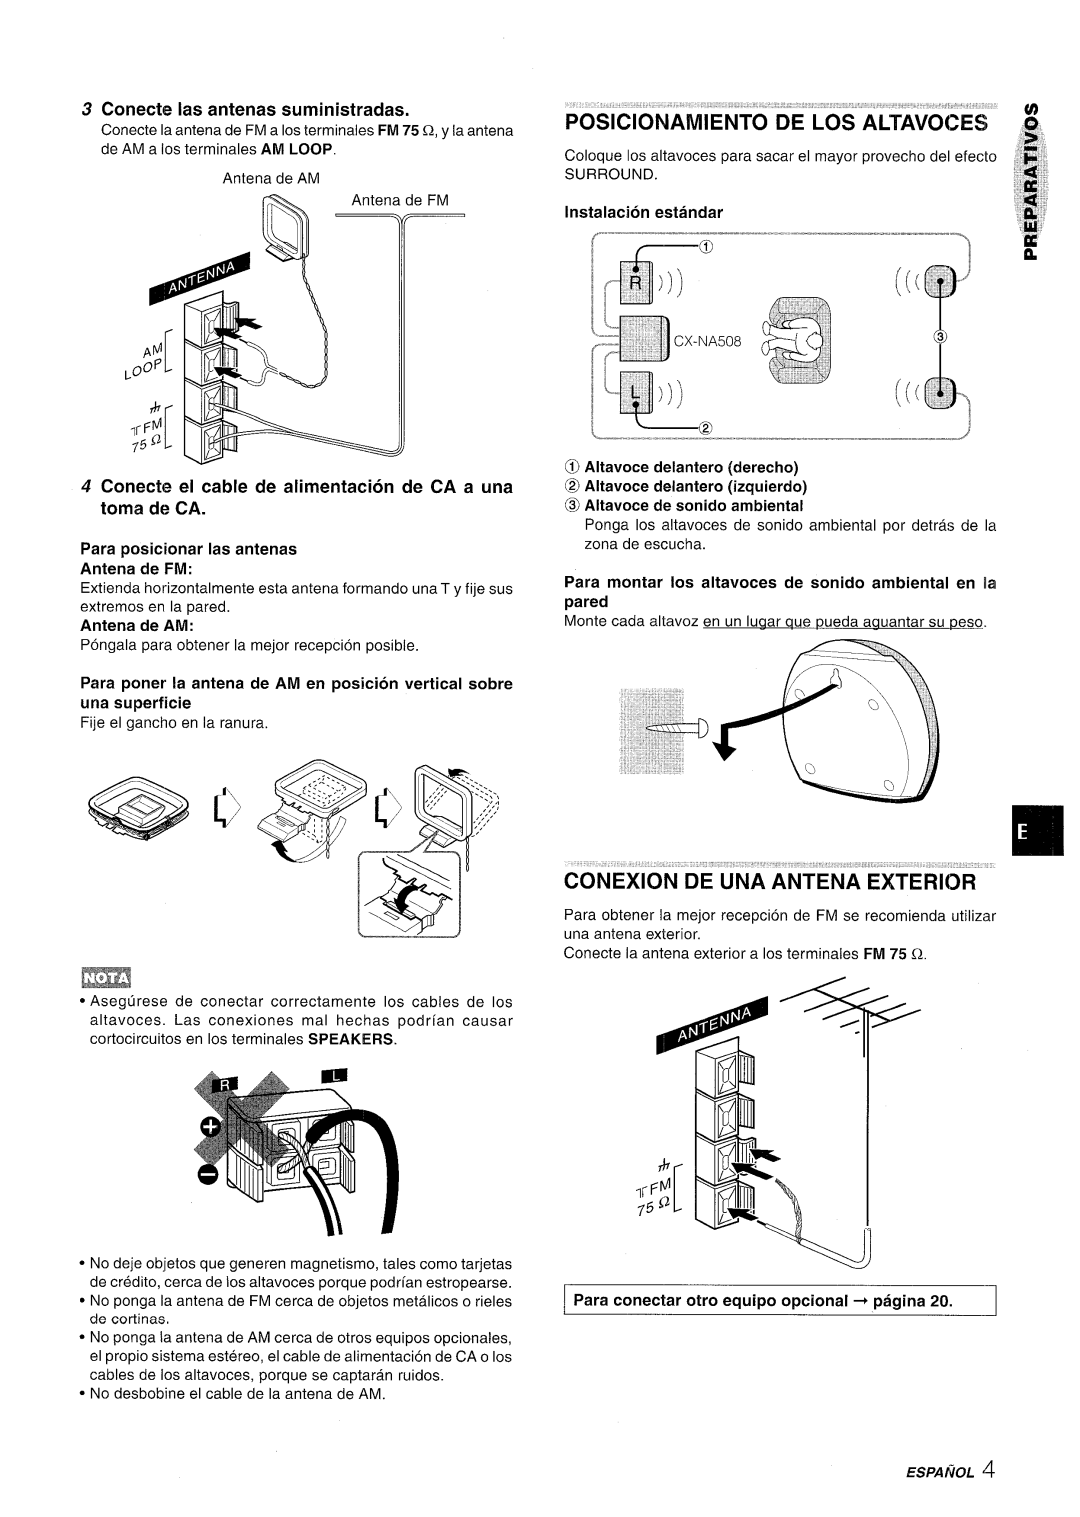 Aiwa NSX-A508 manual Posicionamiento De Los Altavo&S, Conexion De Una Antena Exterior, Conecte Ias antenas suministradas 